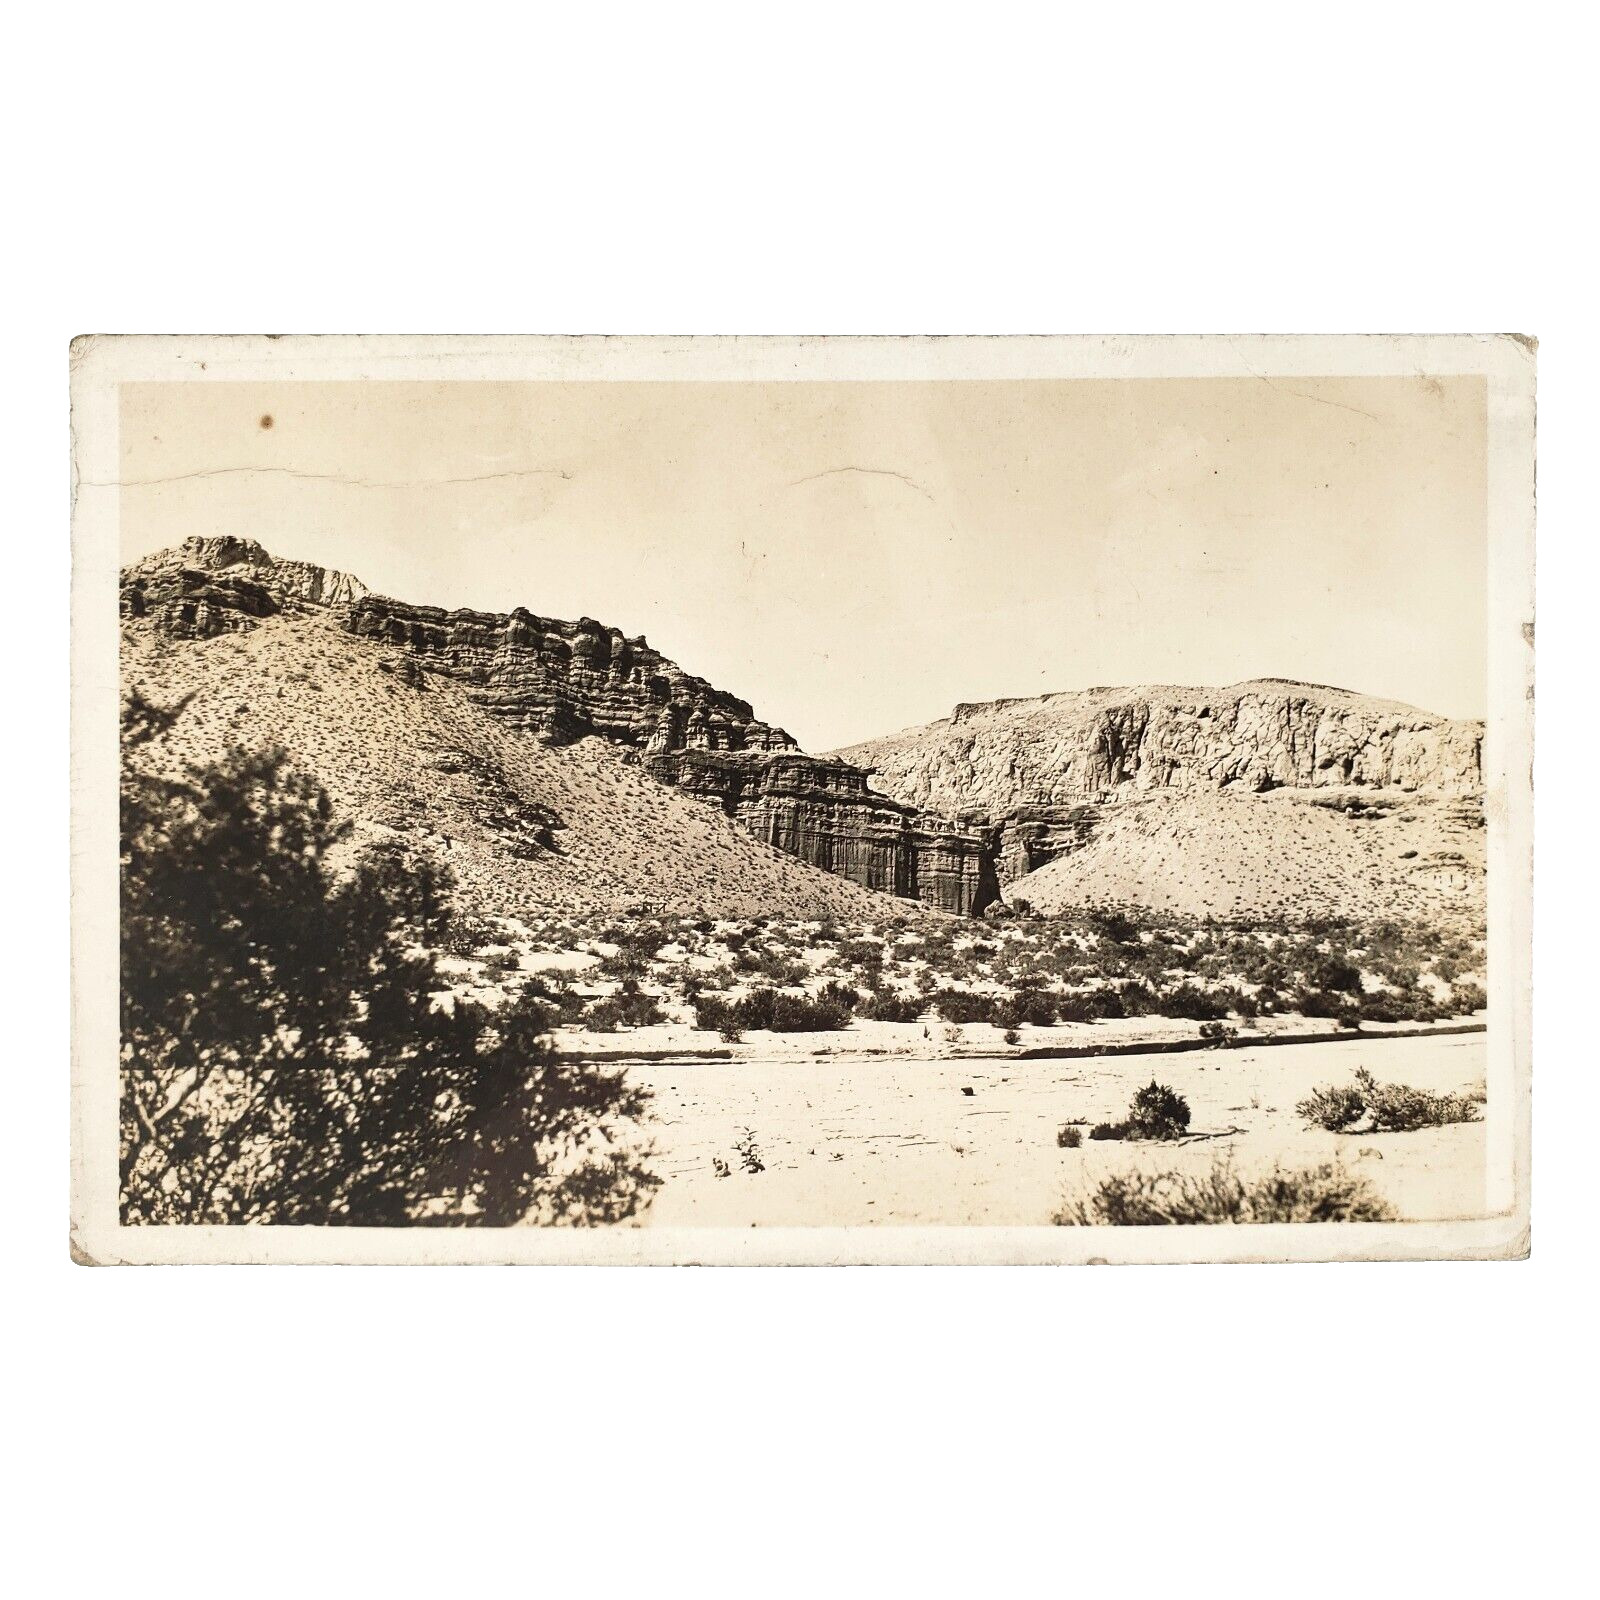 California Desert Canyon Valley RPPC Postcard 1930s Vintage Cliff Photo A4456